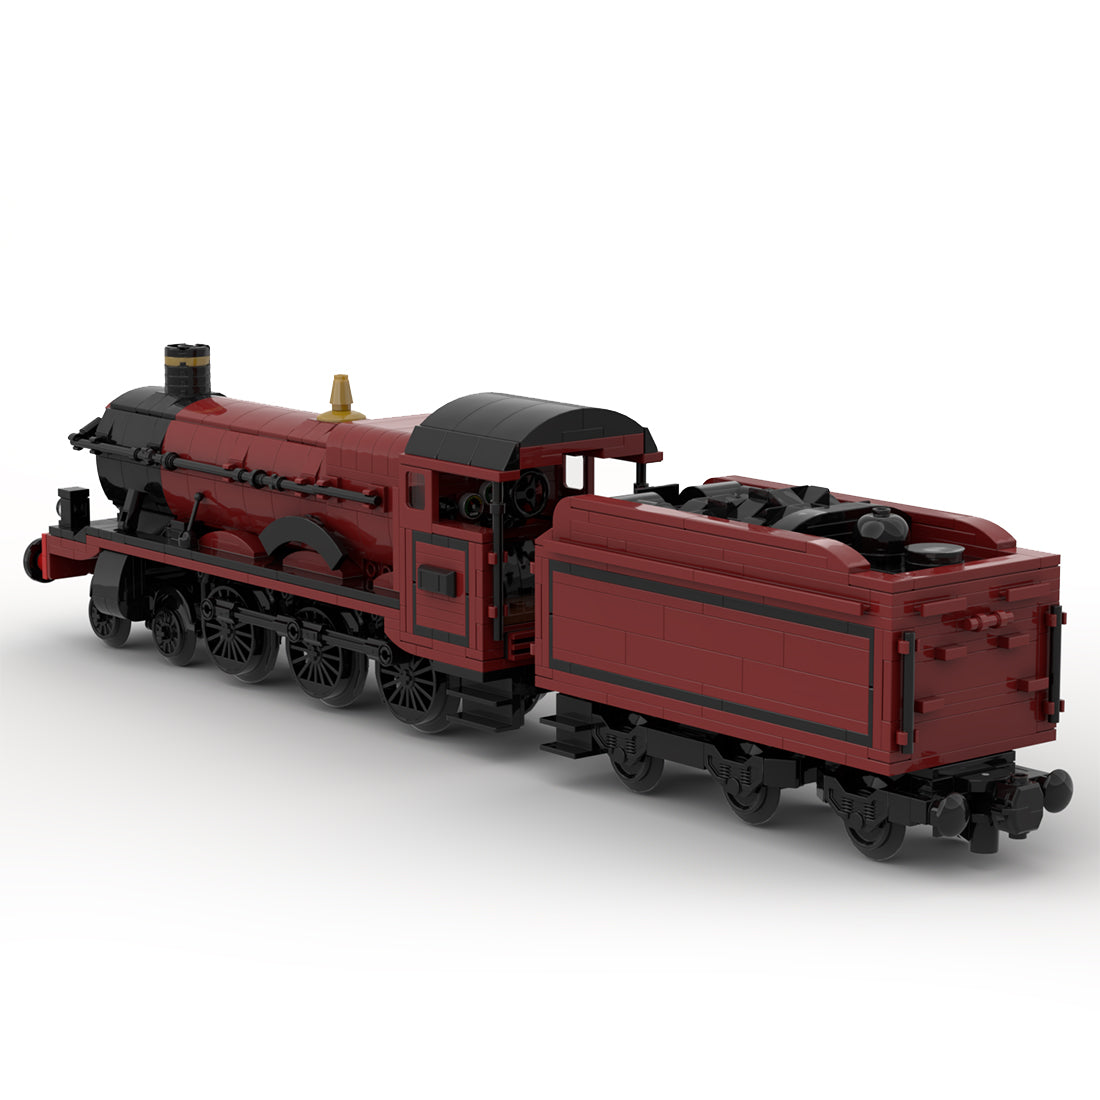 MOC-117702 GWR 8W Hall Class "Olton-Hall" Steam Locomotive